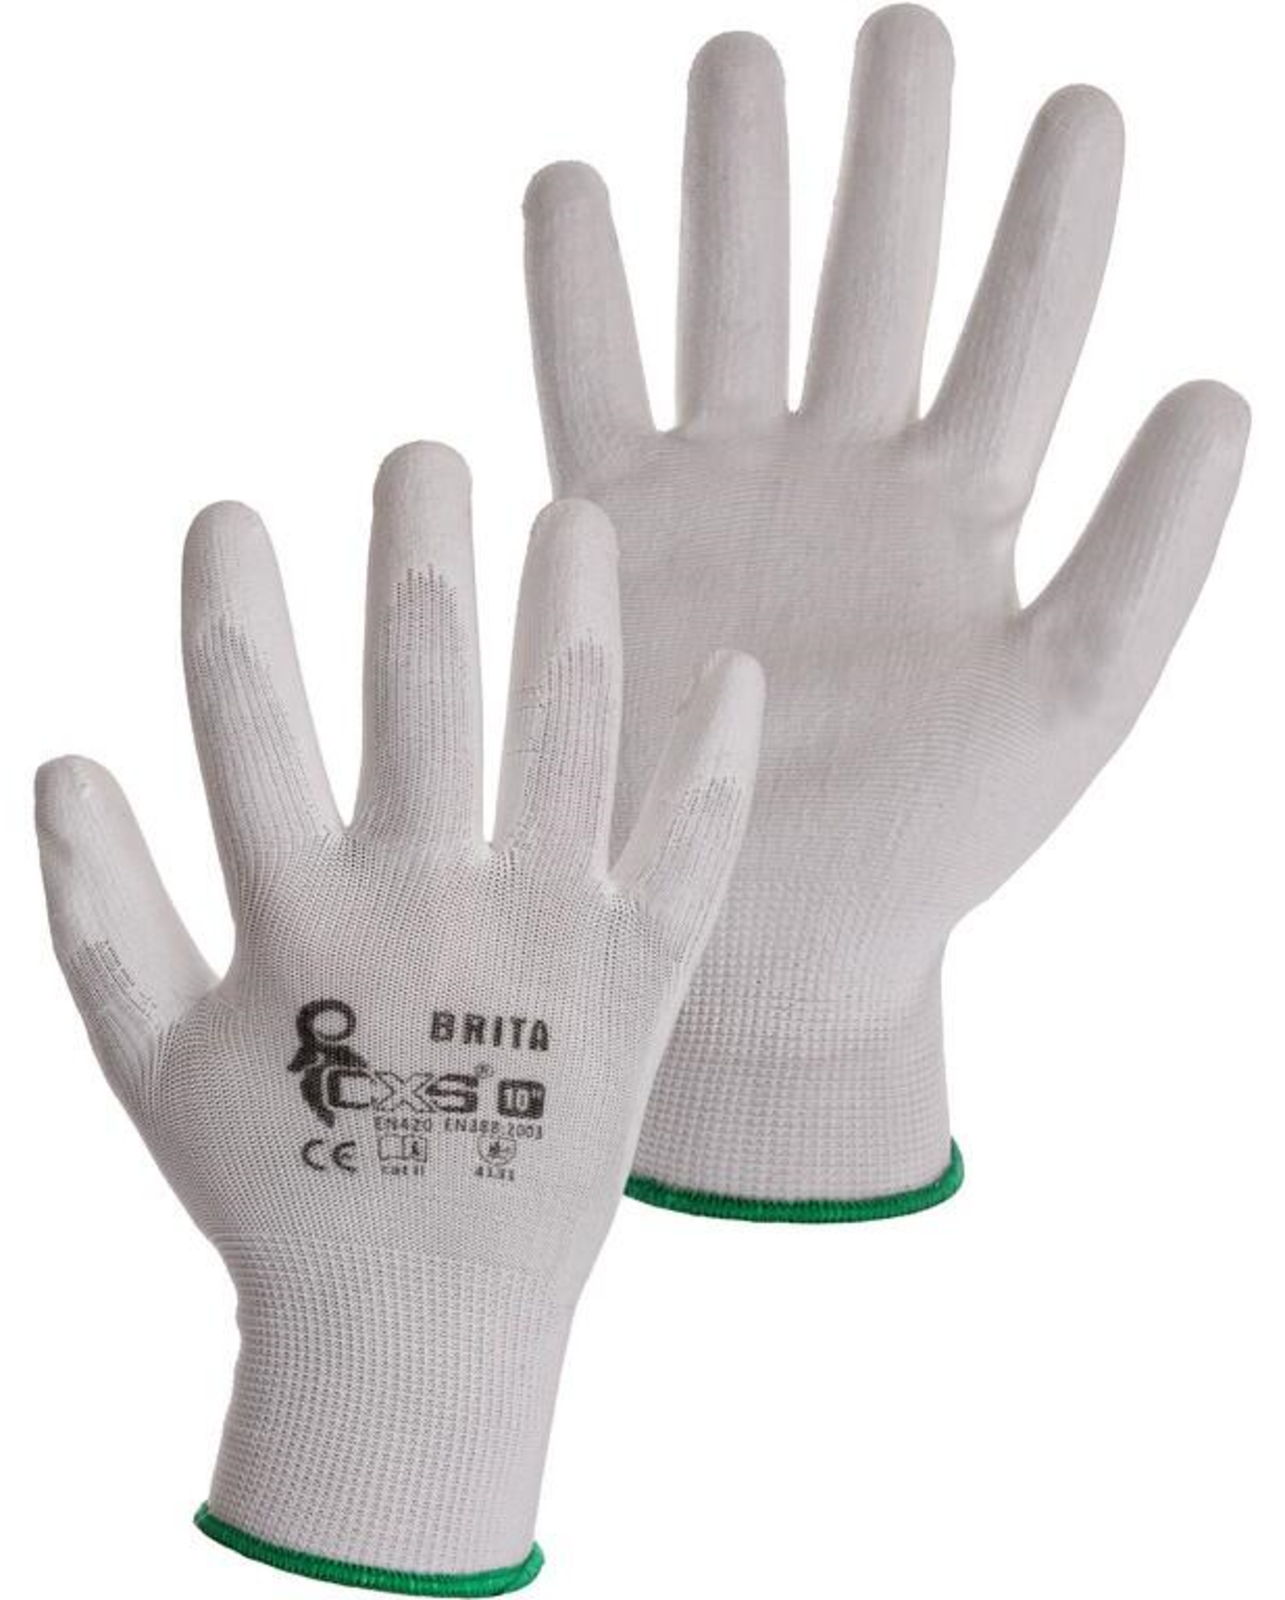 Pracovné rukavice CXS Brita biele - veľkosť: 7/S, farba: biela